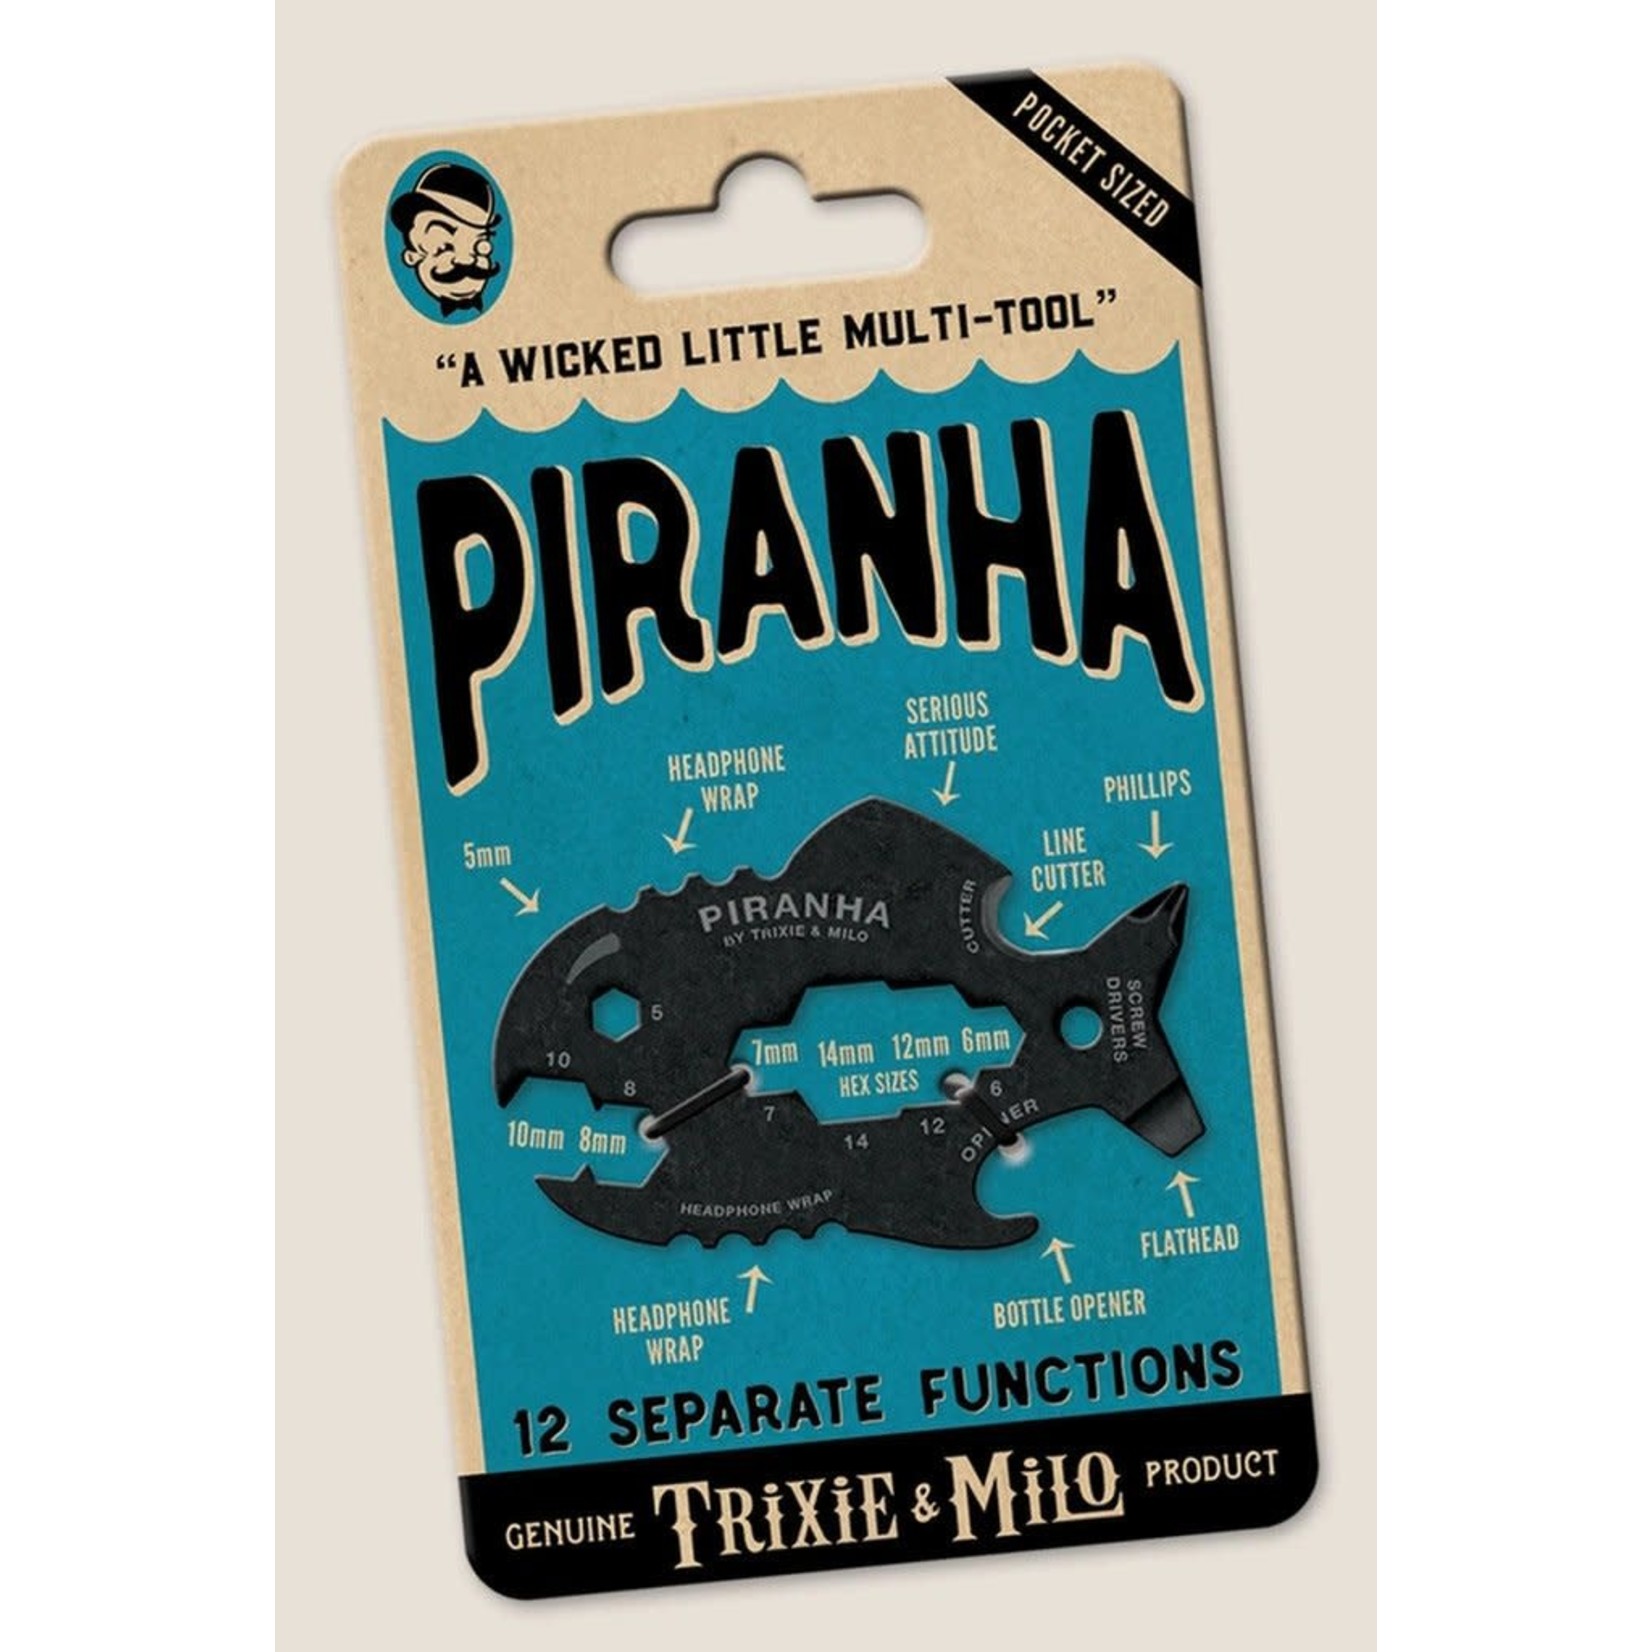 Trixie & Milo Piranha Multi-Tool